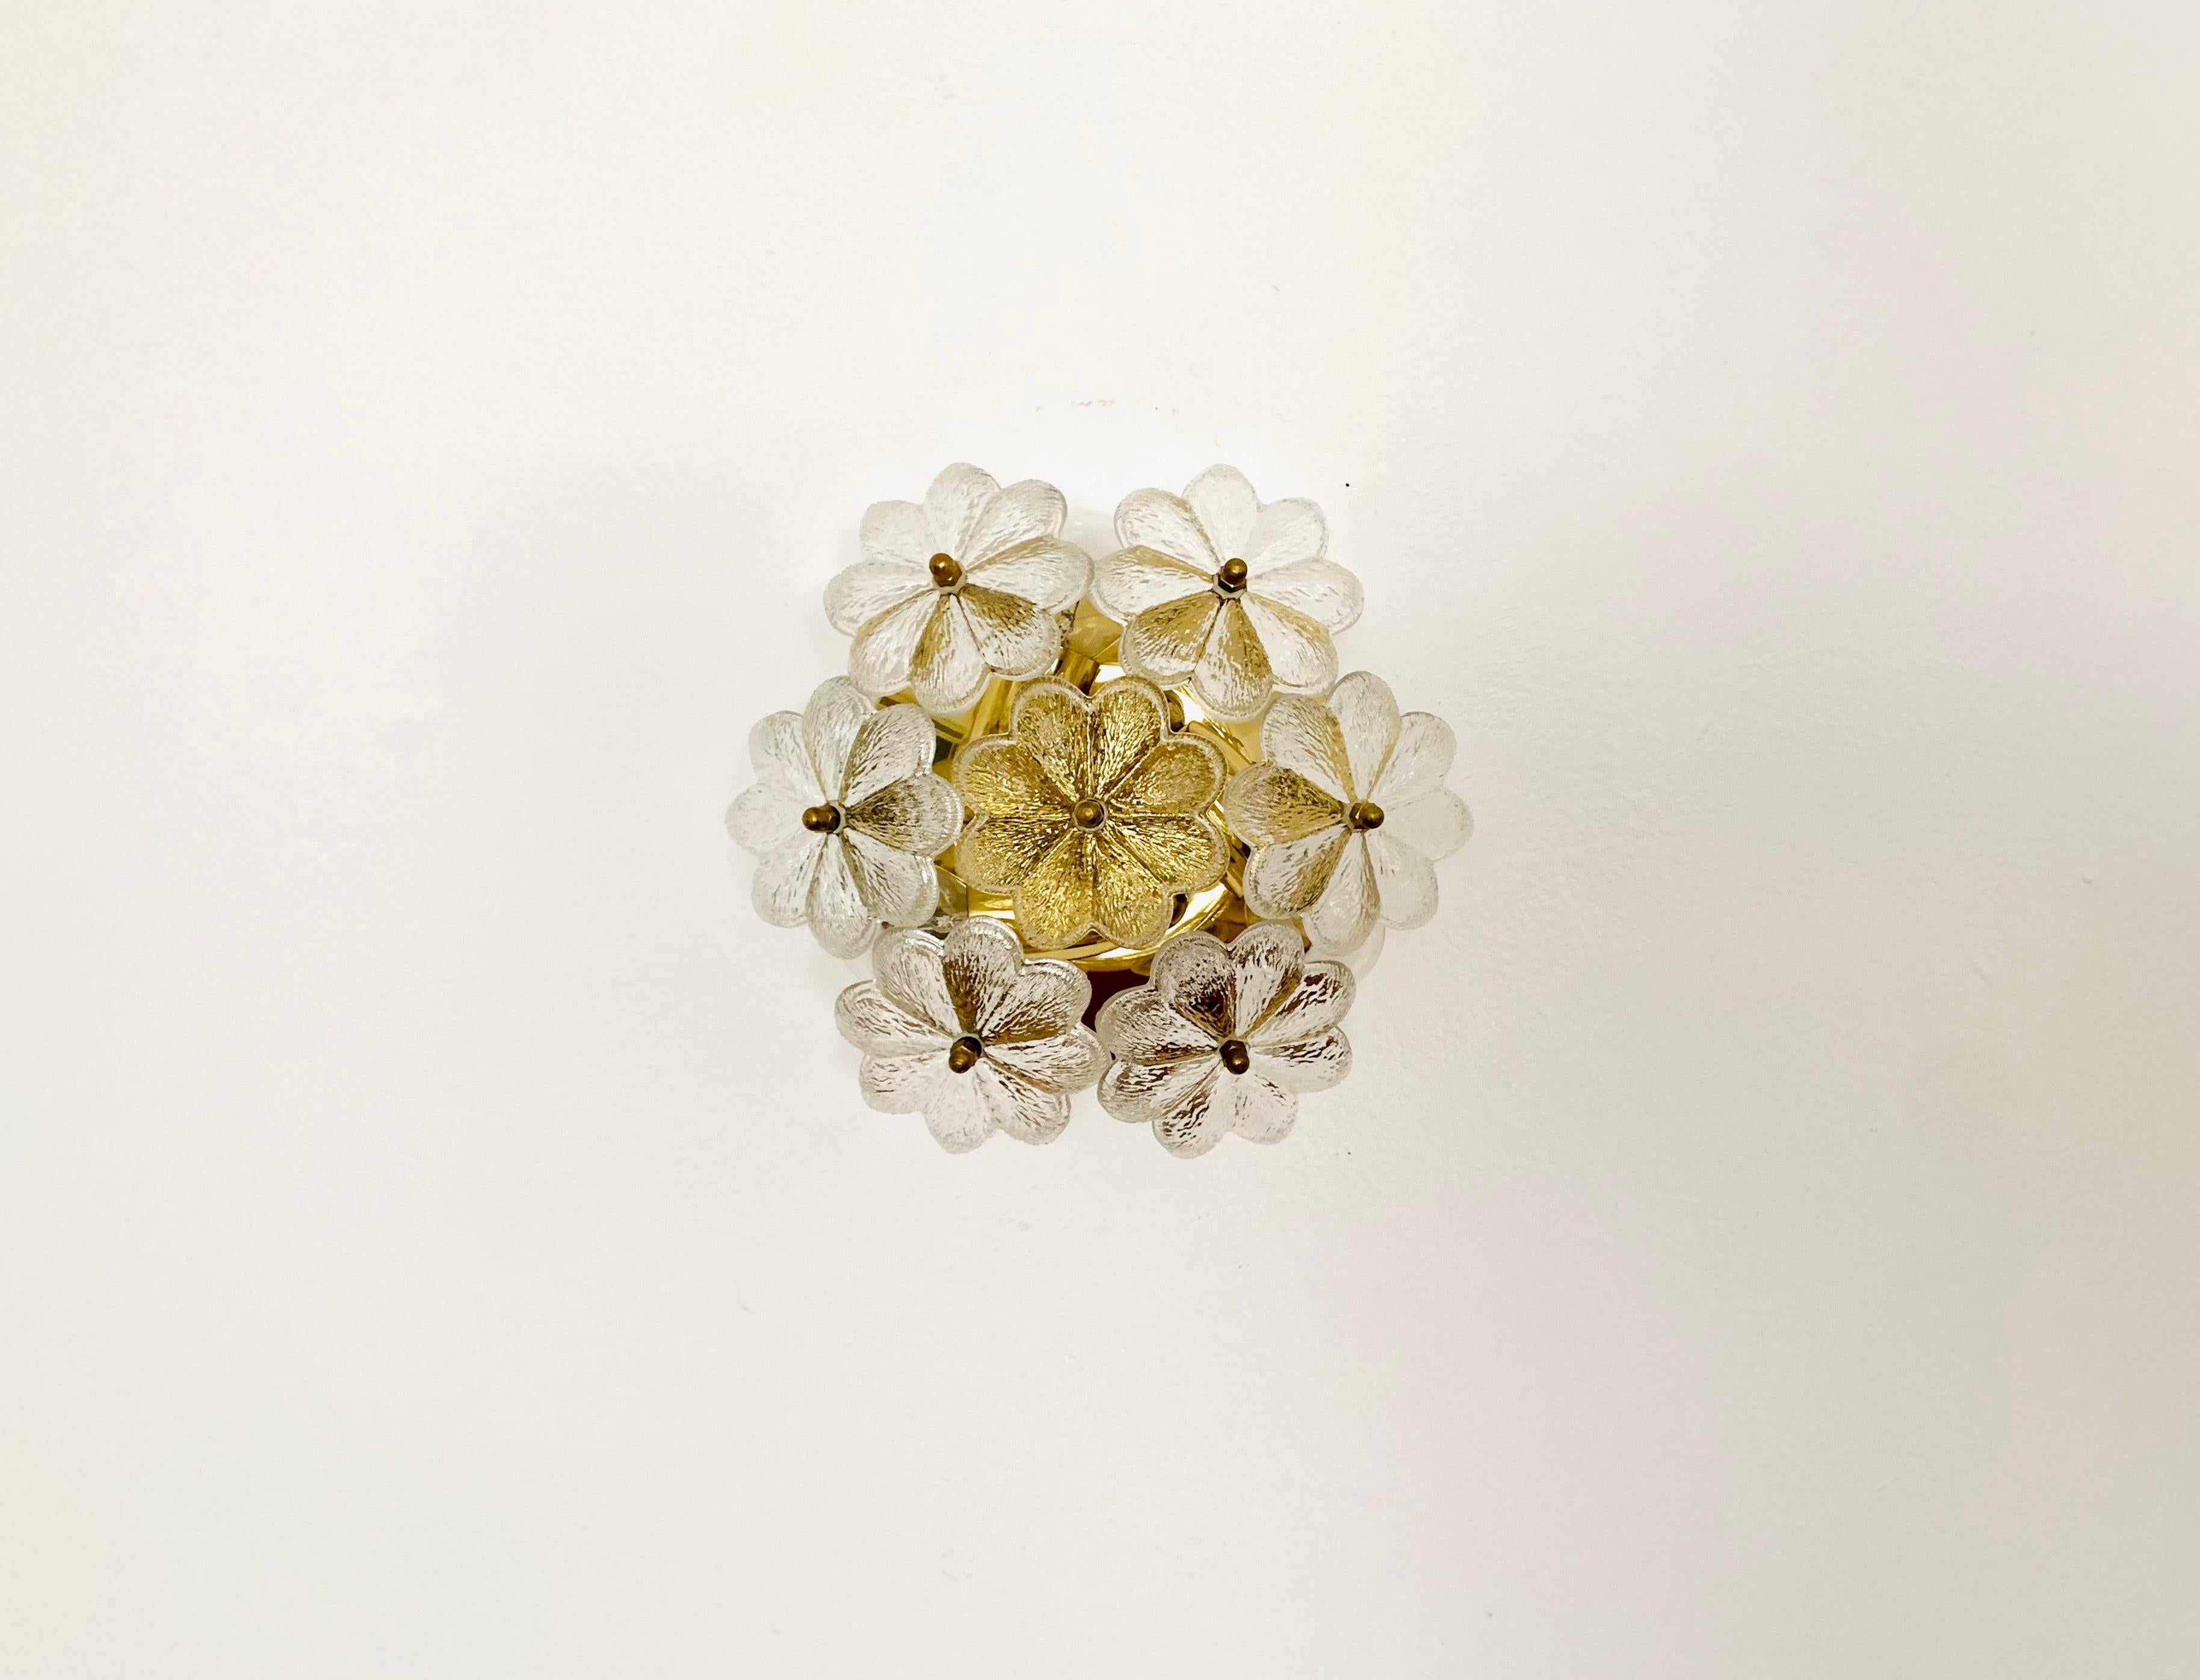 Wunderschöne florale Wandlampe aus Kristallglas aus den 1960er Jahren.
Die hochwertigen Glaselemente verbreiten ein beeindruckend funkelndes Lichtspiel.
Außergewöhnlich hohe Verarbeitungsqualität.
Sehr edle und luxuriöse Ausstrahlung und ein echter